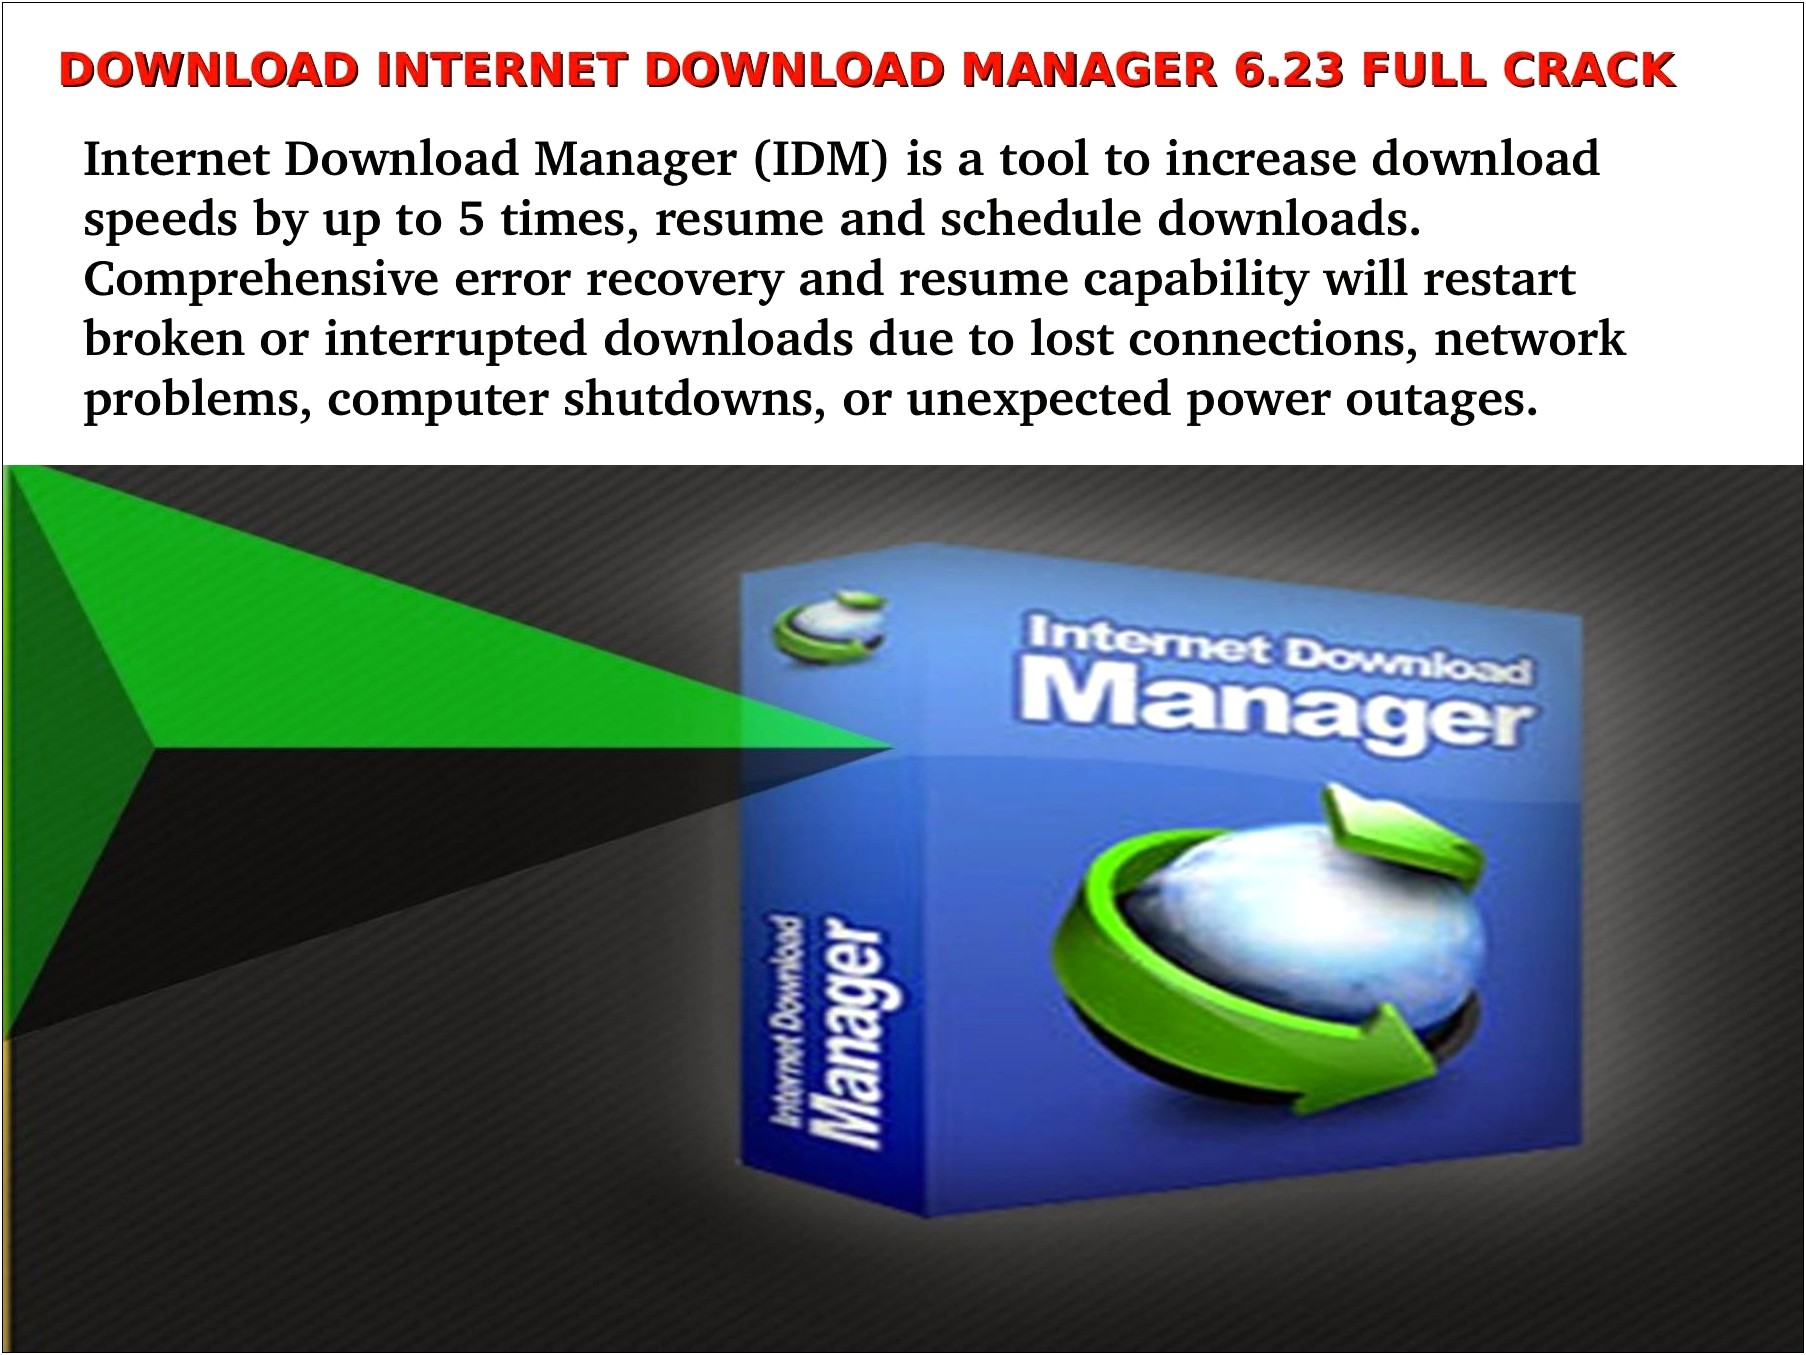 Internet Download Manager Resume Broken Downloads